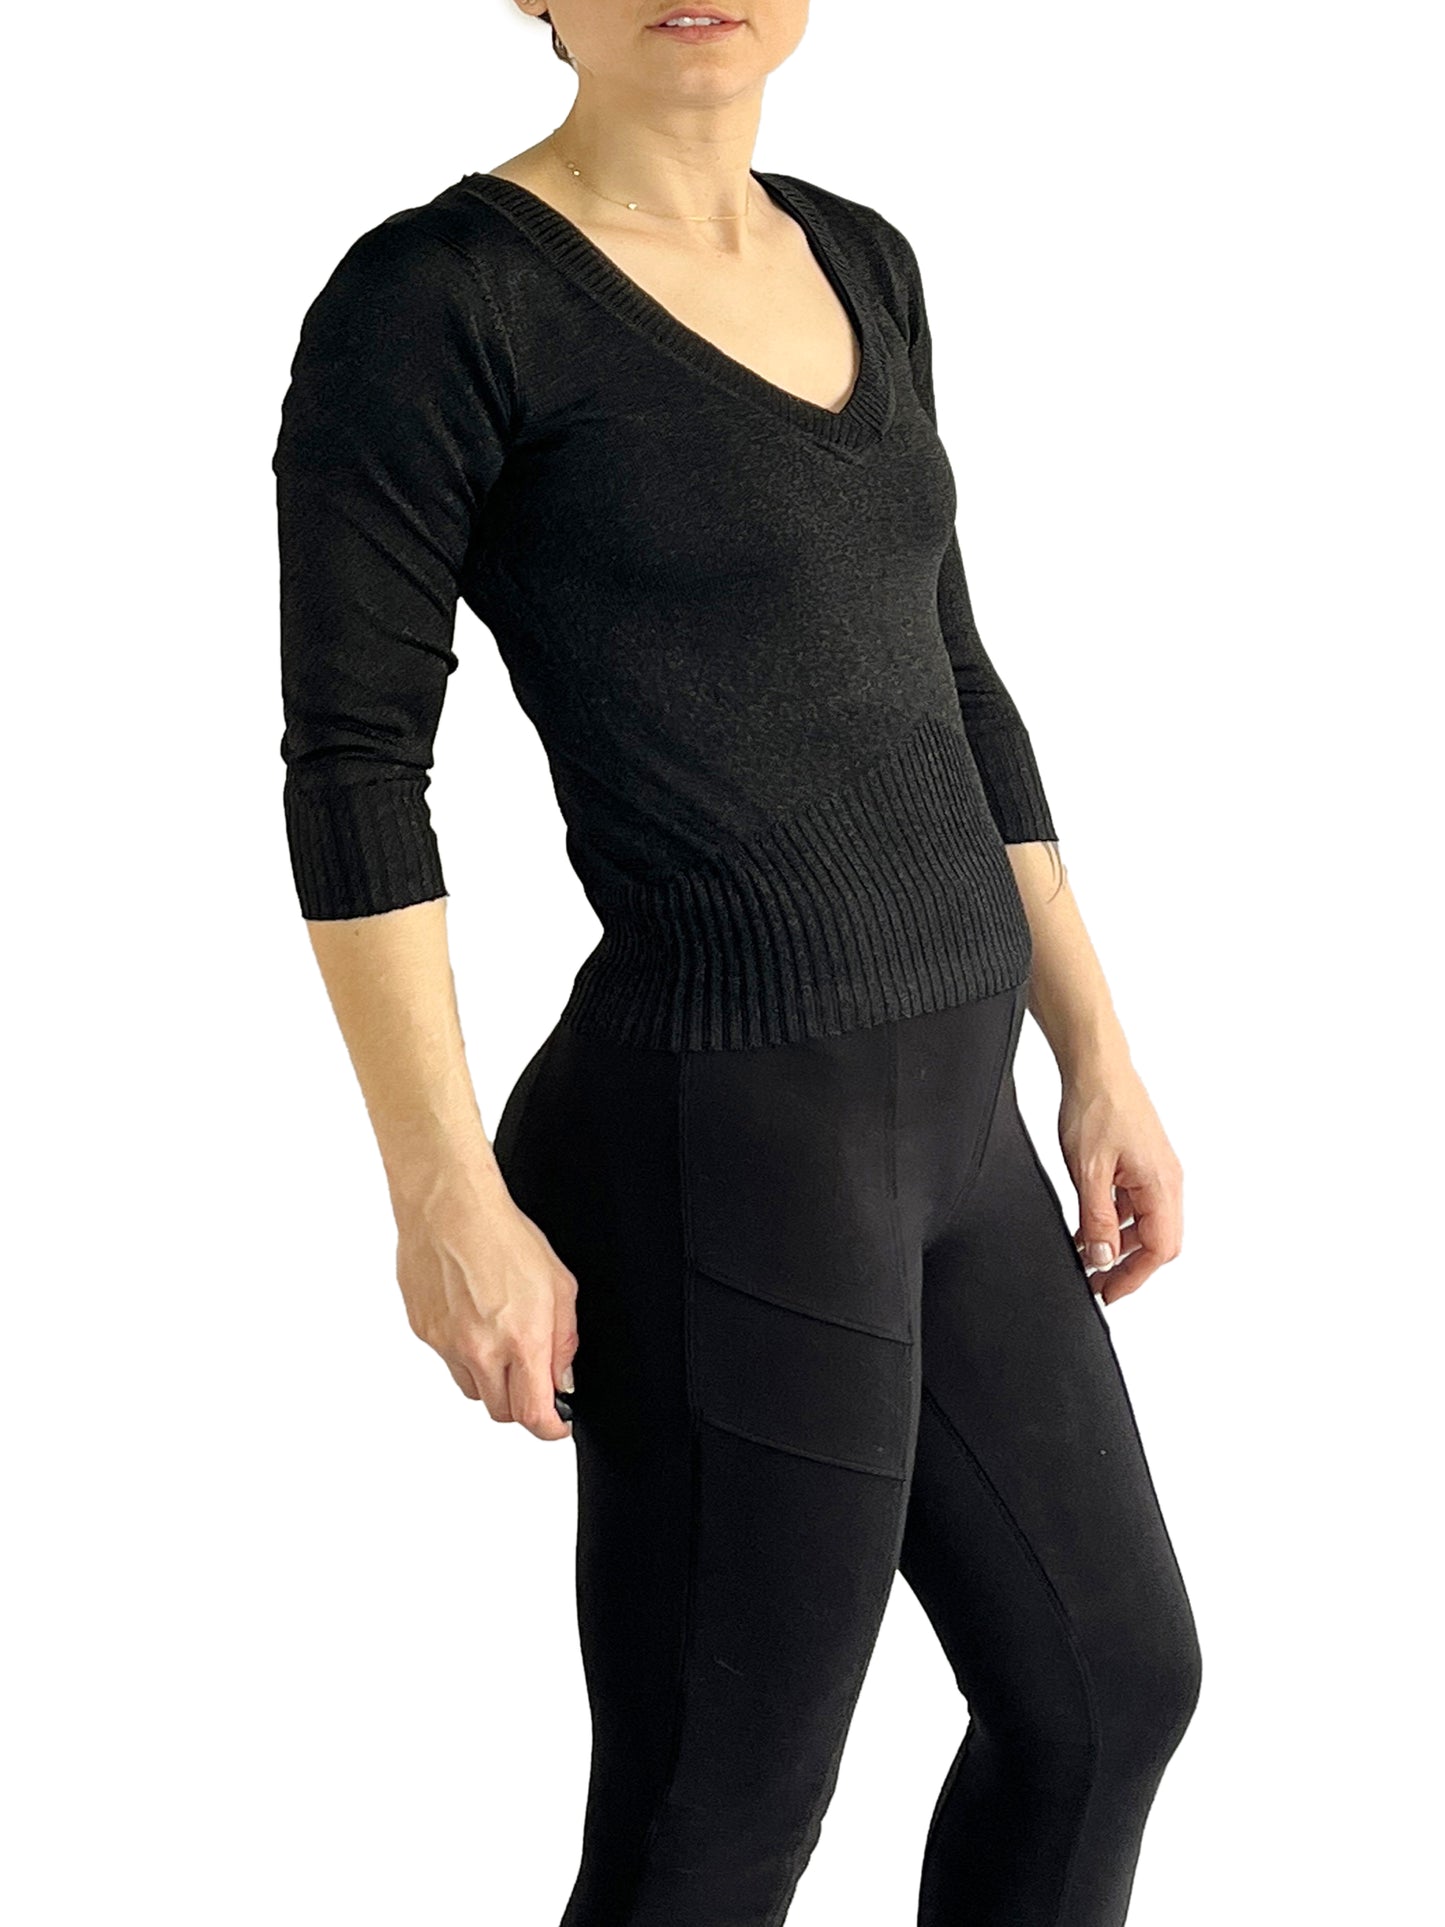 Bebe Sparkle V-Neck Sweater Black Sz XS SKU 000071-1